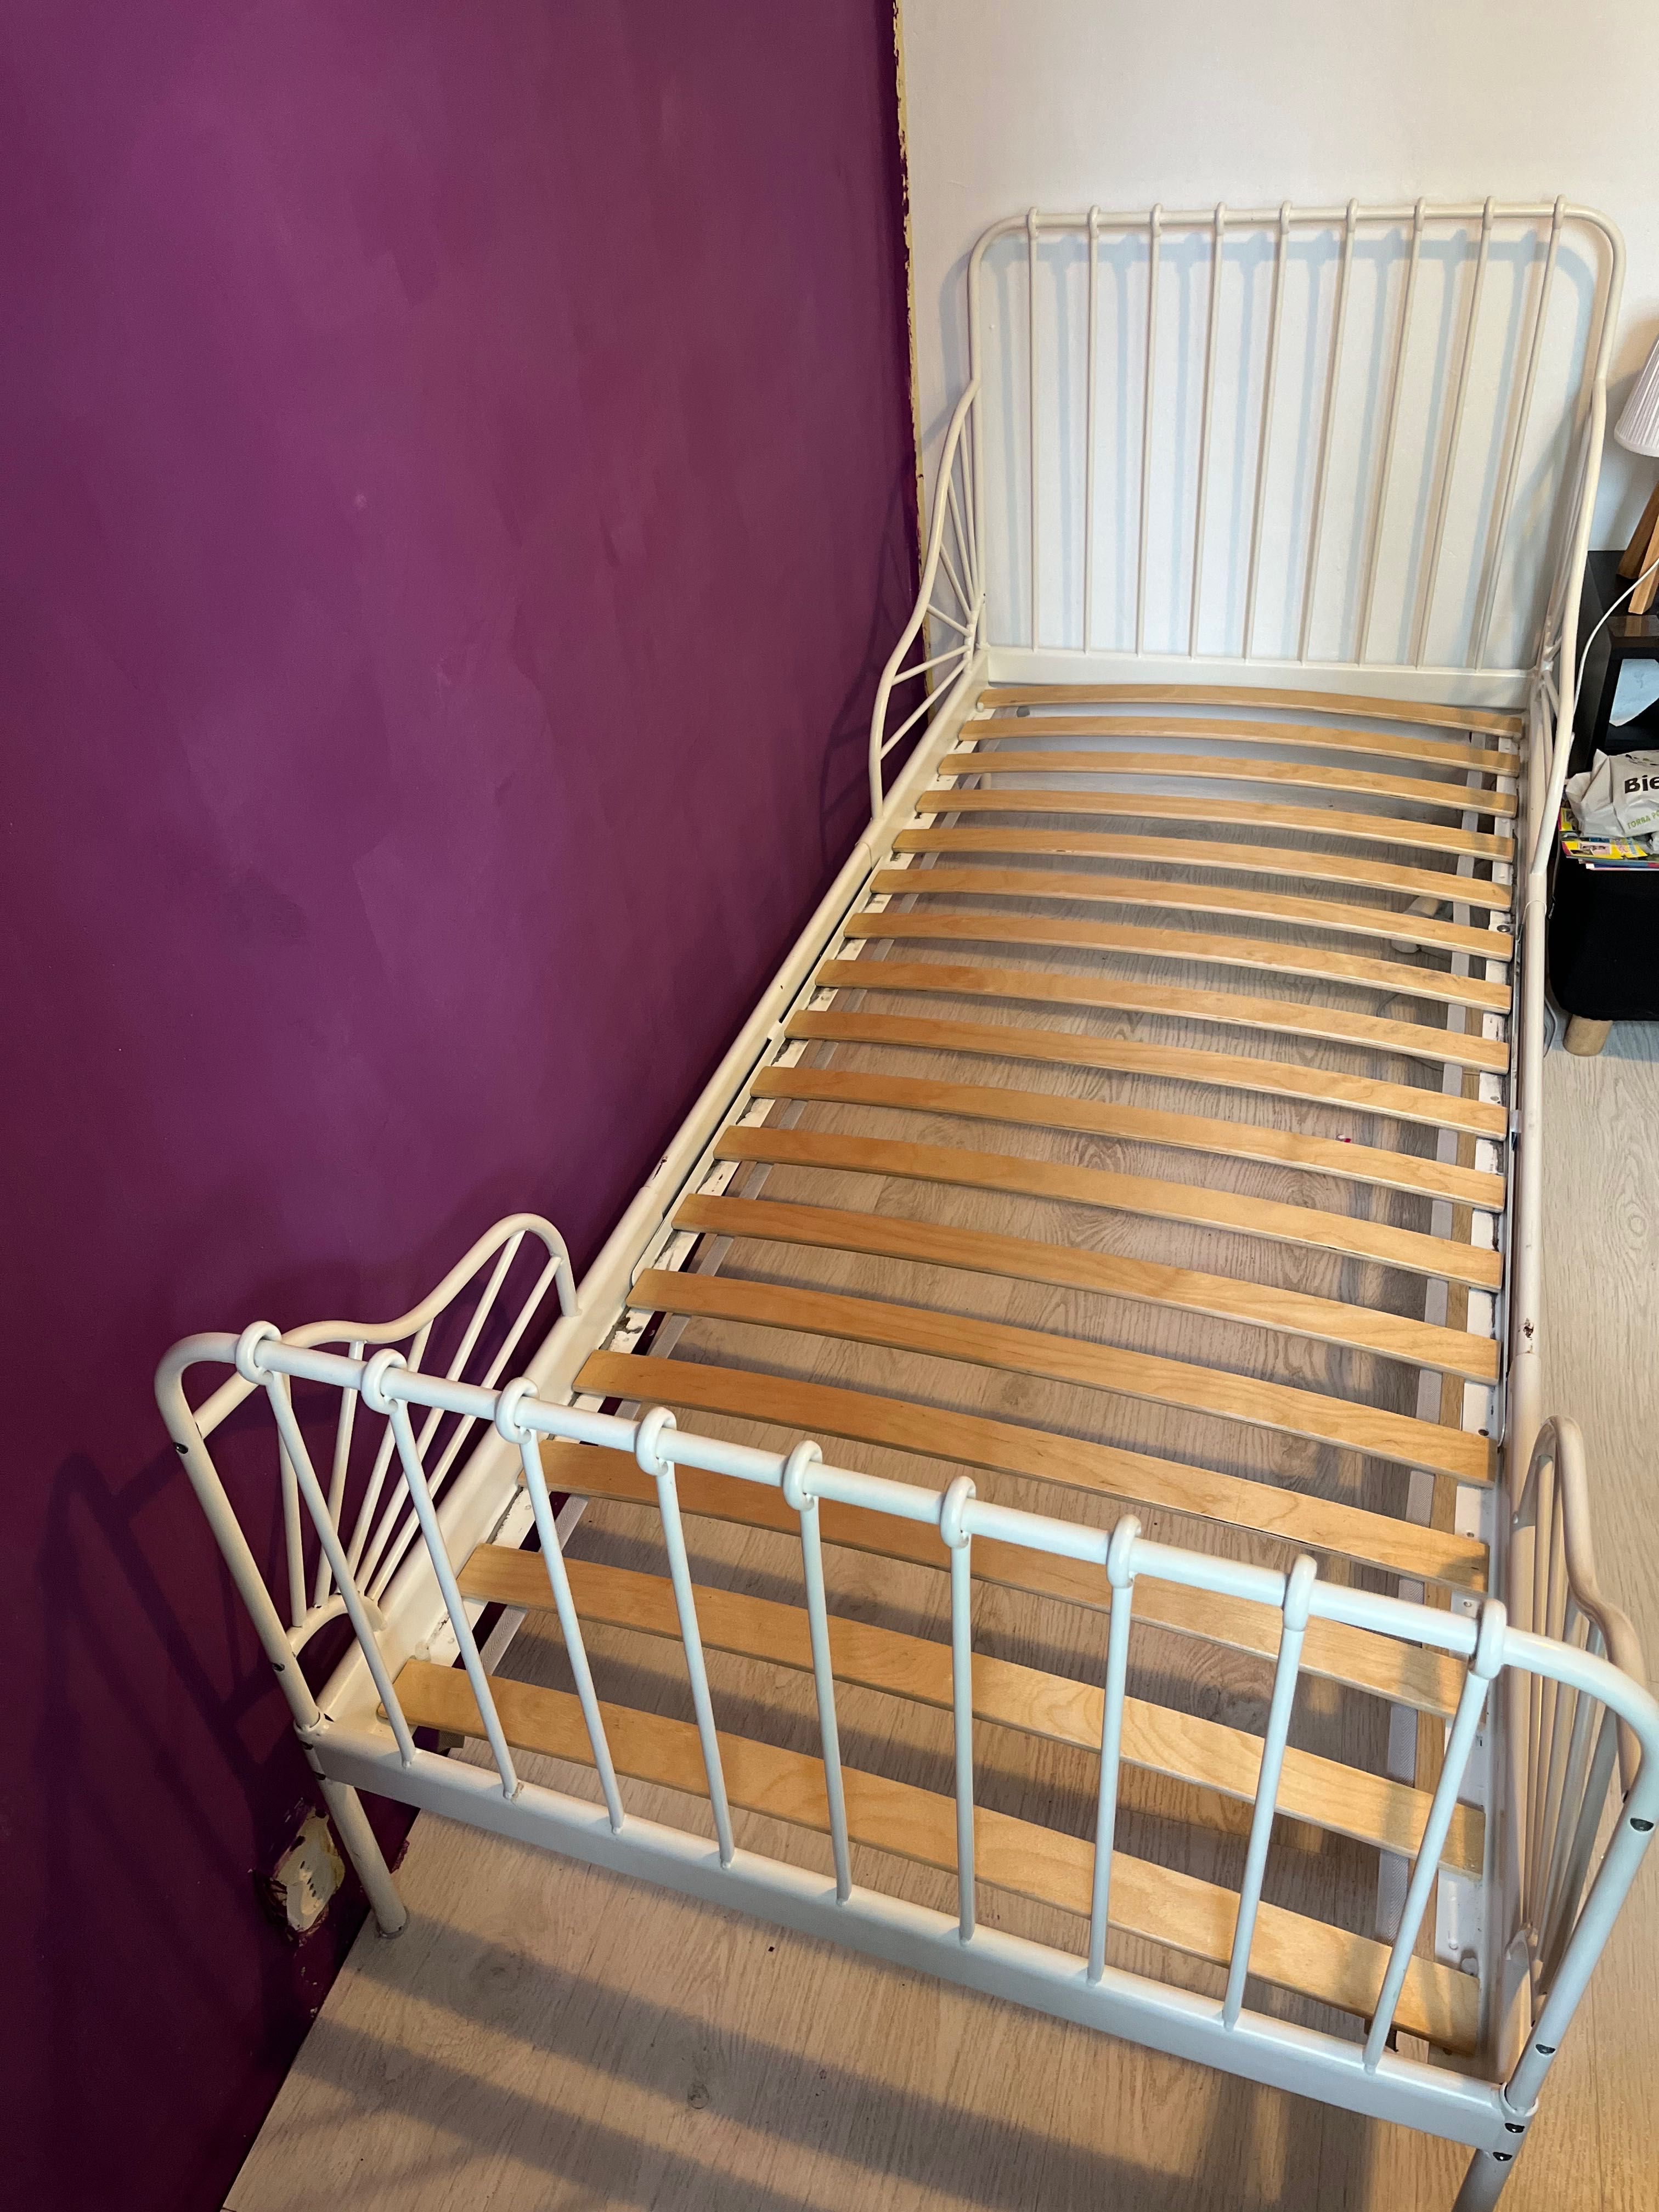 Łóżko MINNEN 80x200 z dnem. IKEA, metalowe łóżko dla dziecka białe